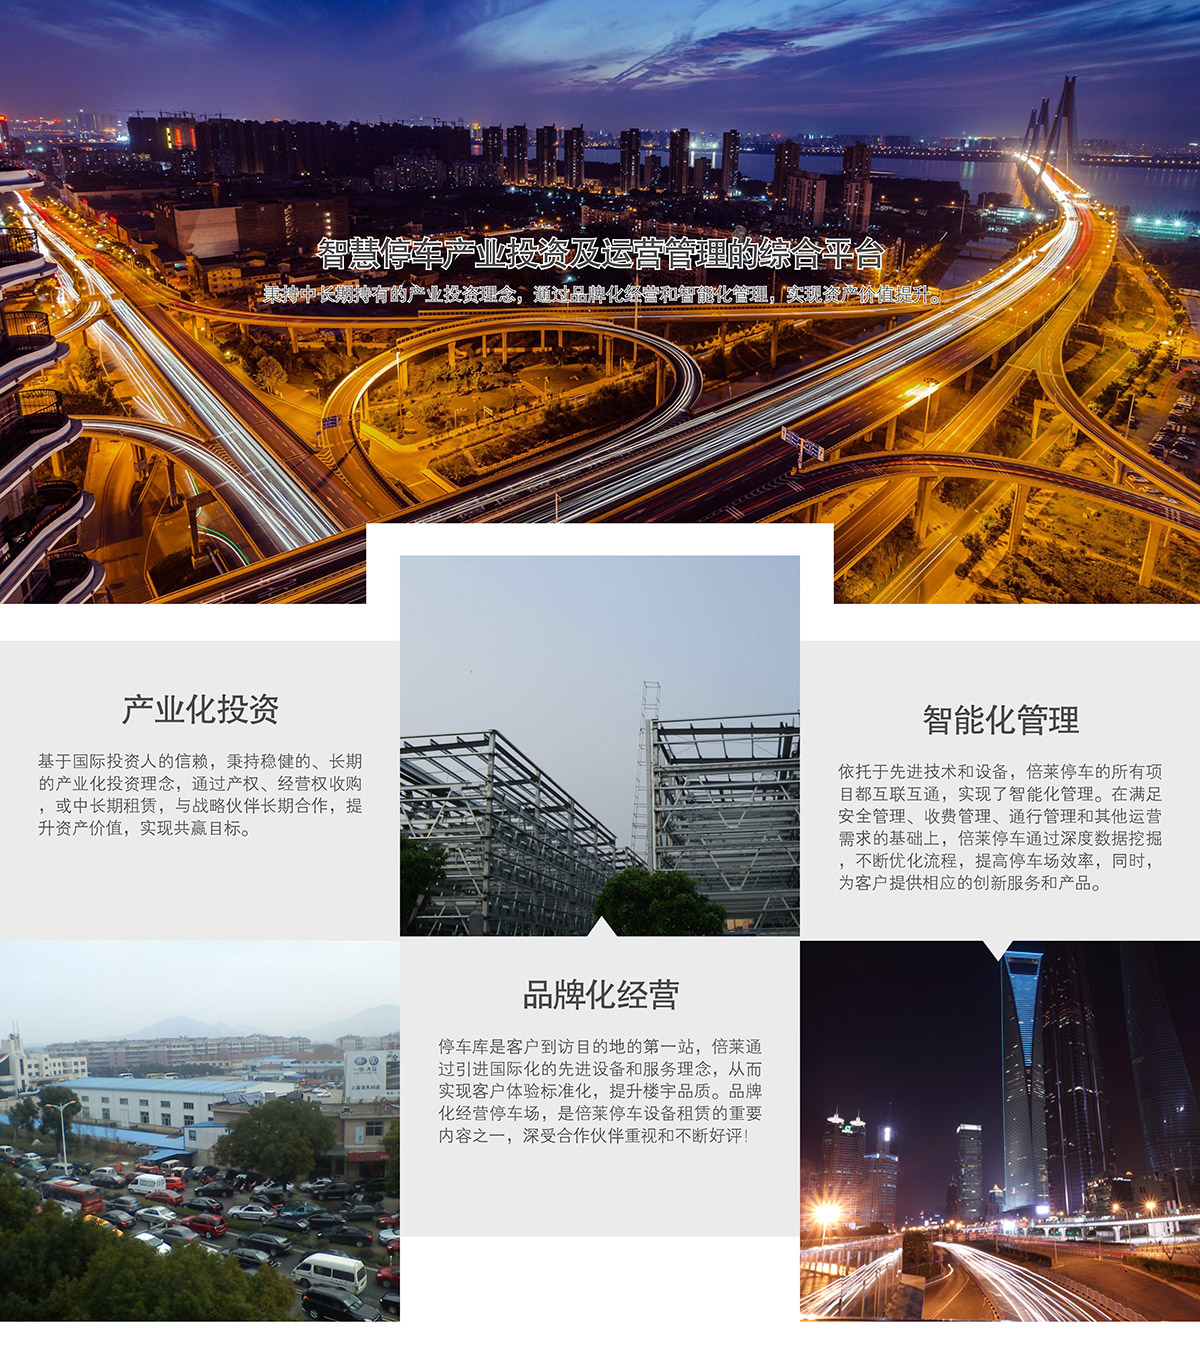 贵州智慧停车产业投资及运营管理的综合平台.jpg